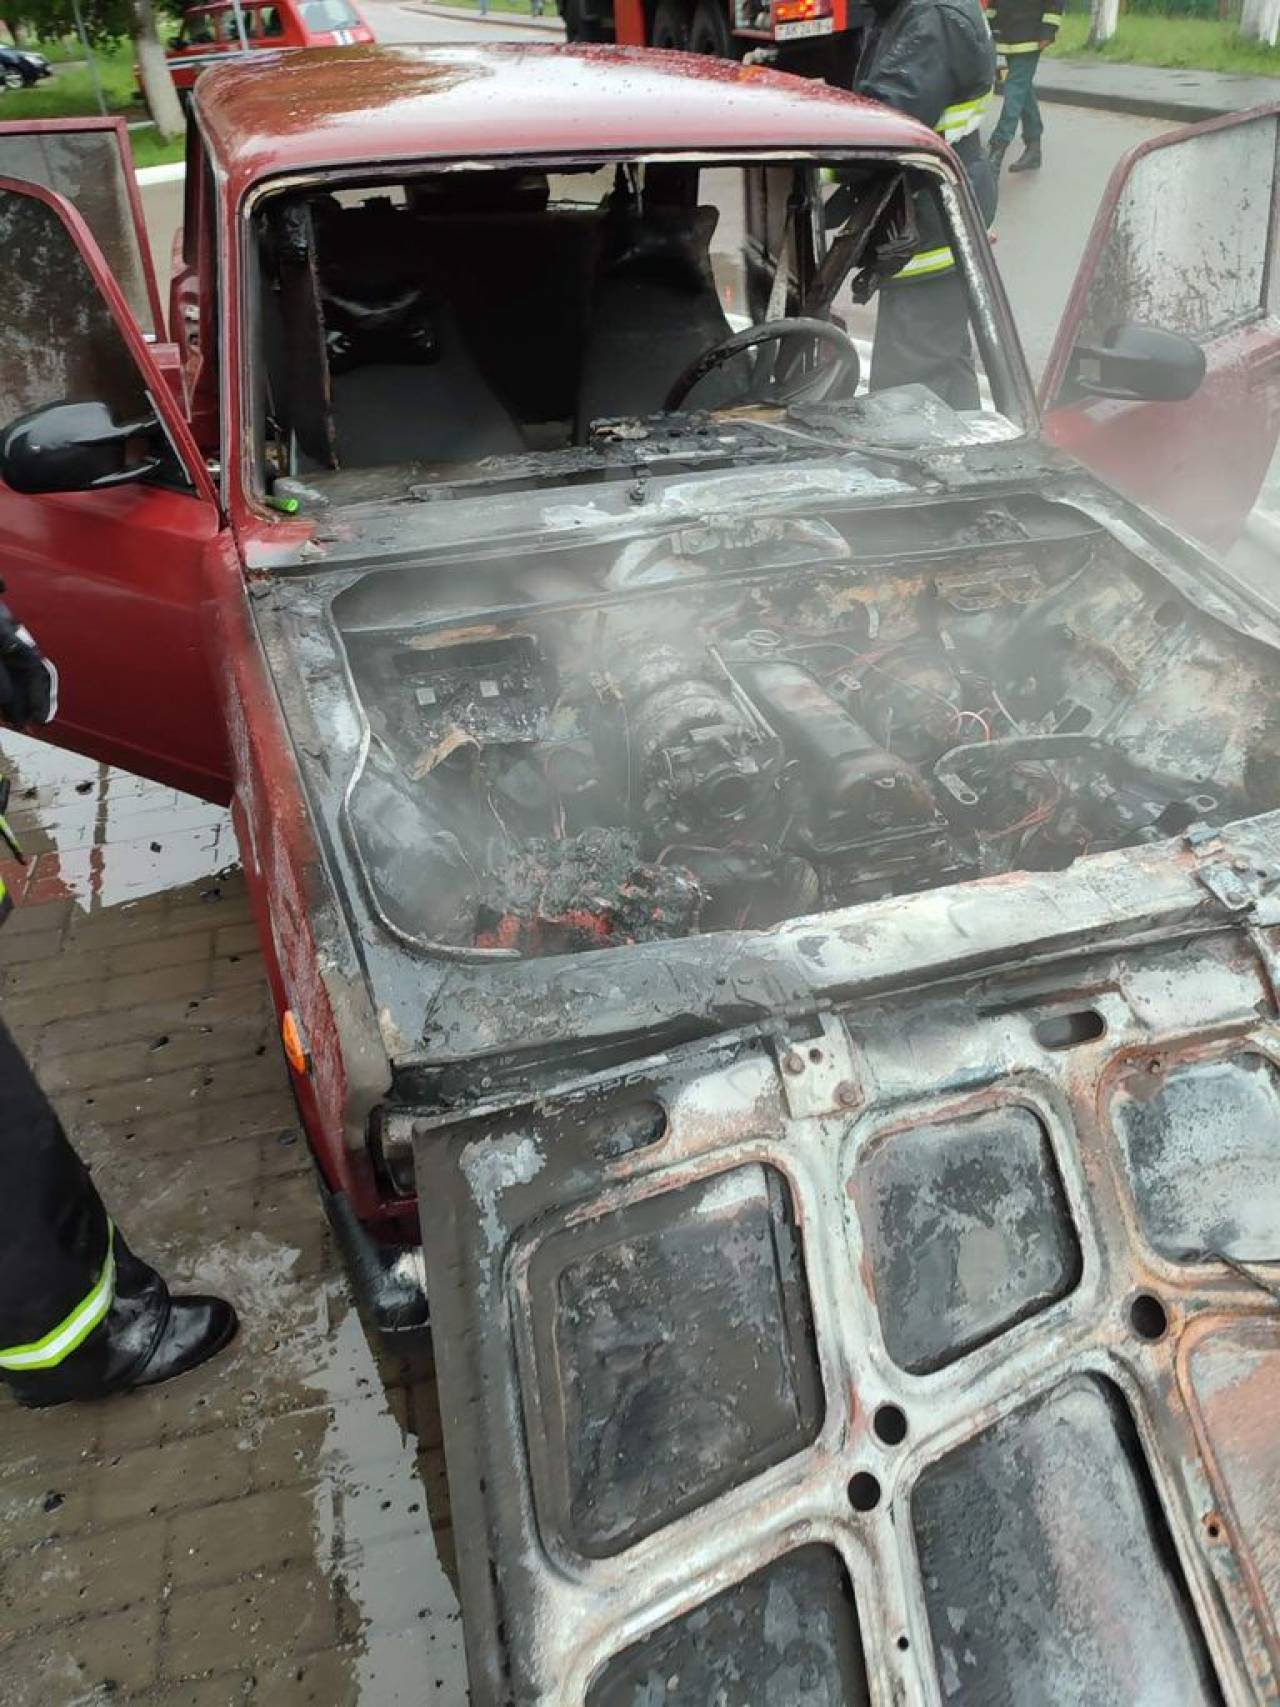 Вчера в Лидском районе сгорели две легковушки